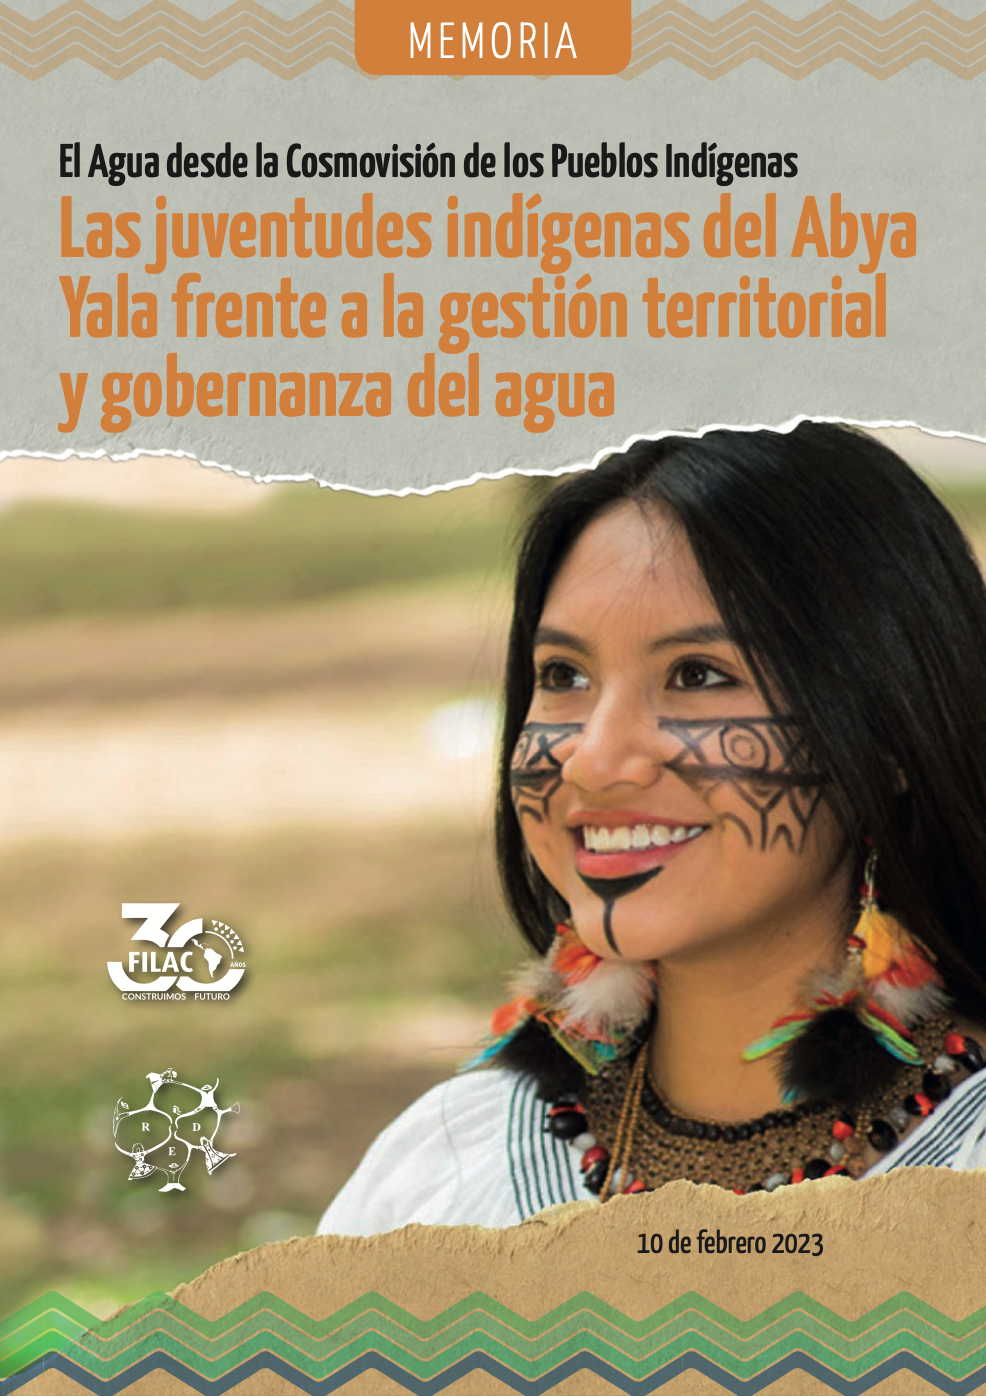 El Agua desde la Cosmovisión de los Pueblos Indígenas Las juventudes indígenas del Abya Yala frente a la gestión territorial y gobernanza del agua (FILAC)